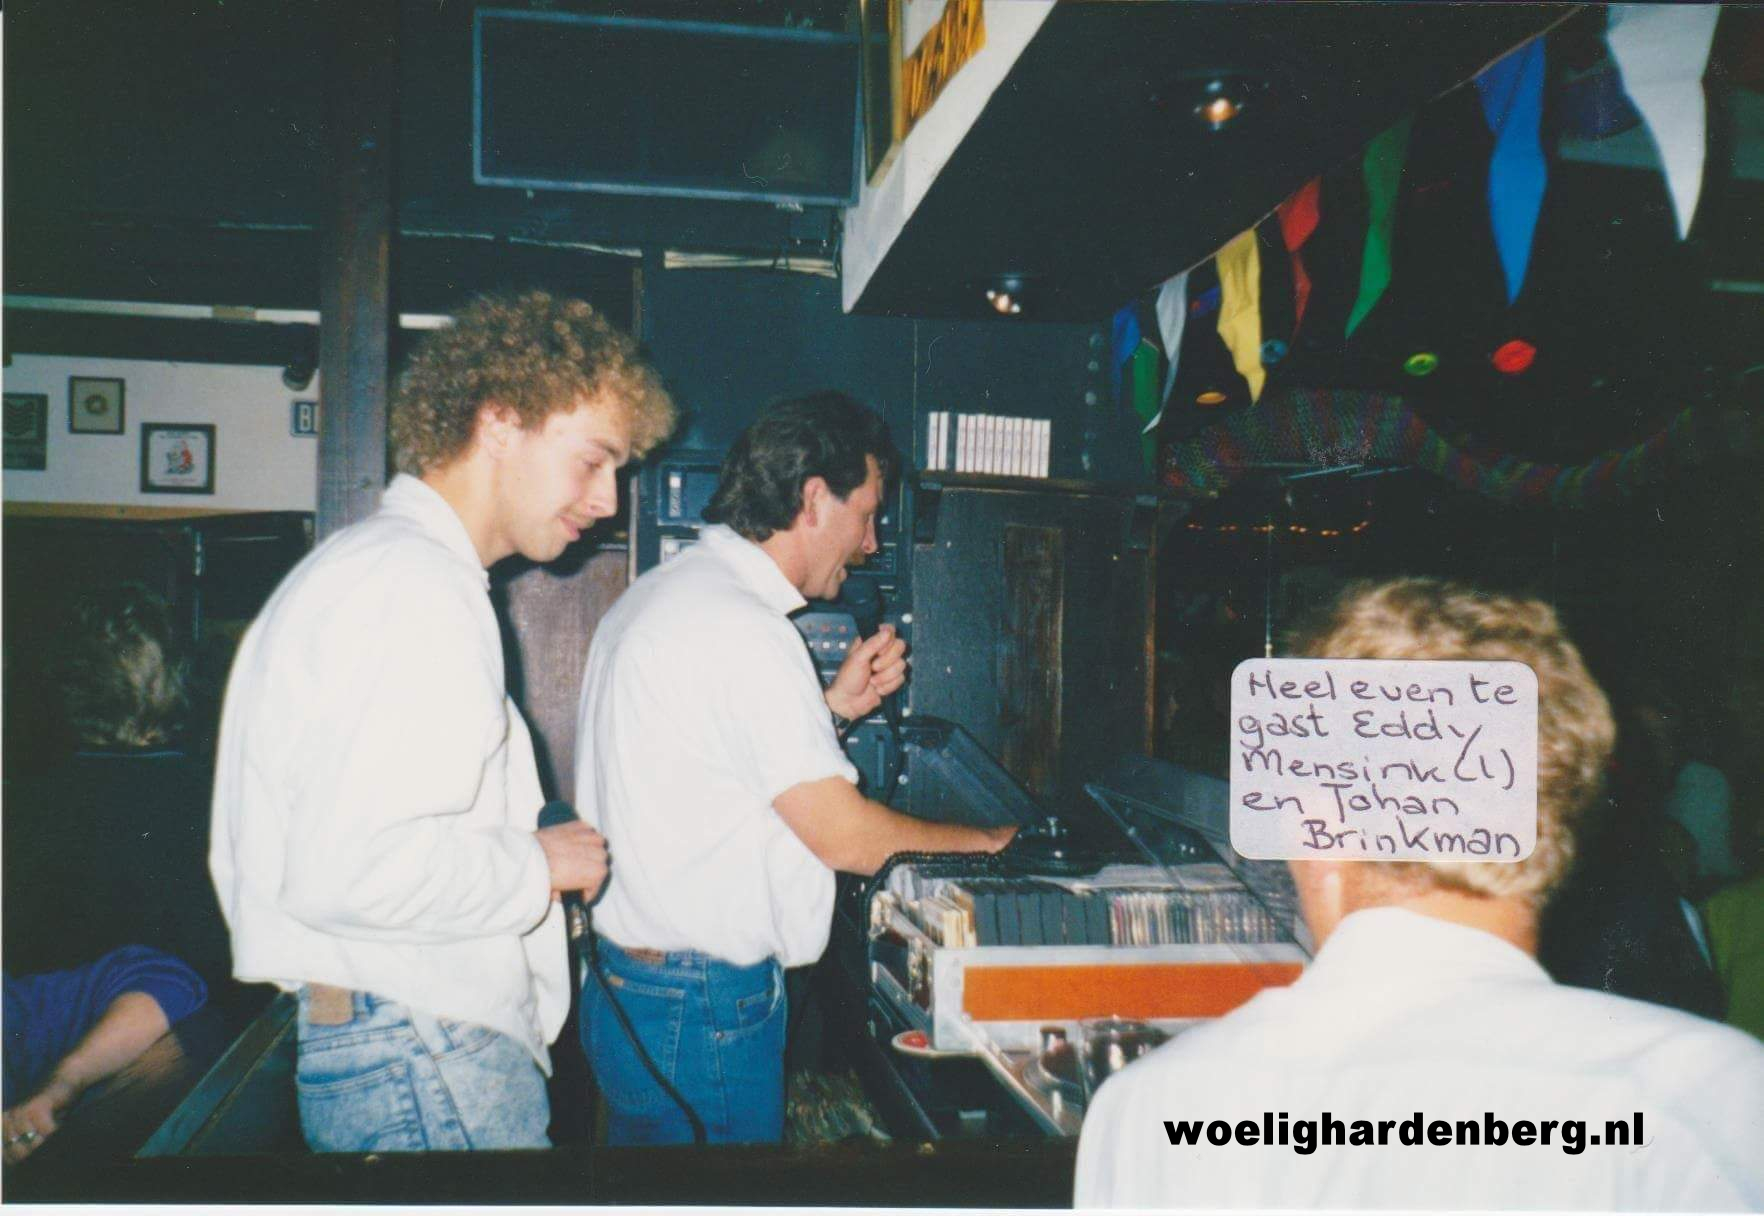 Flash Bergentheim met Johan Brinkman en Eddy Mensink